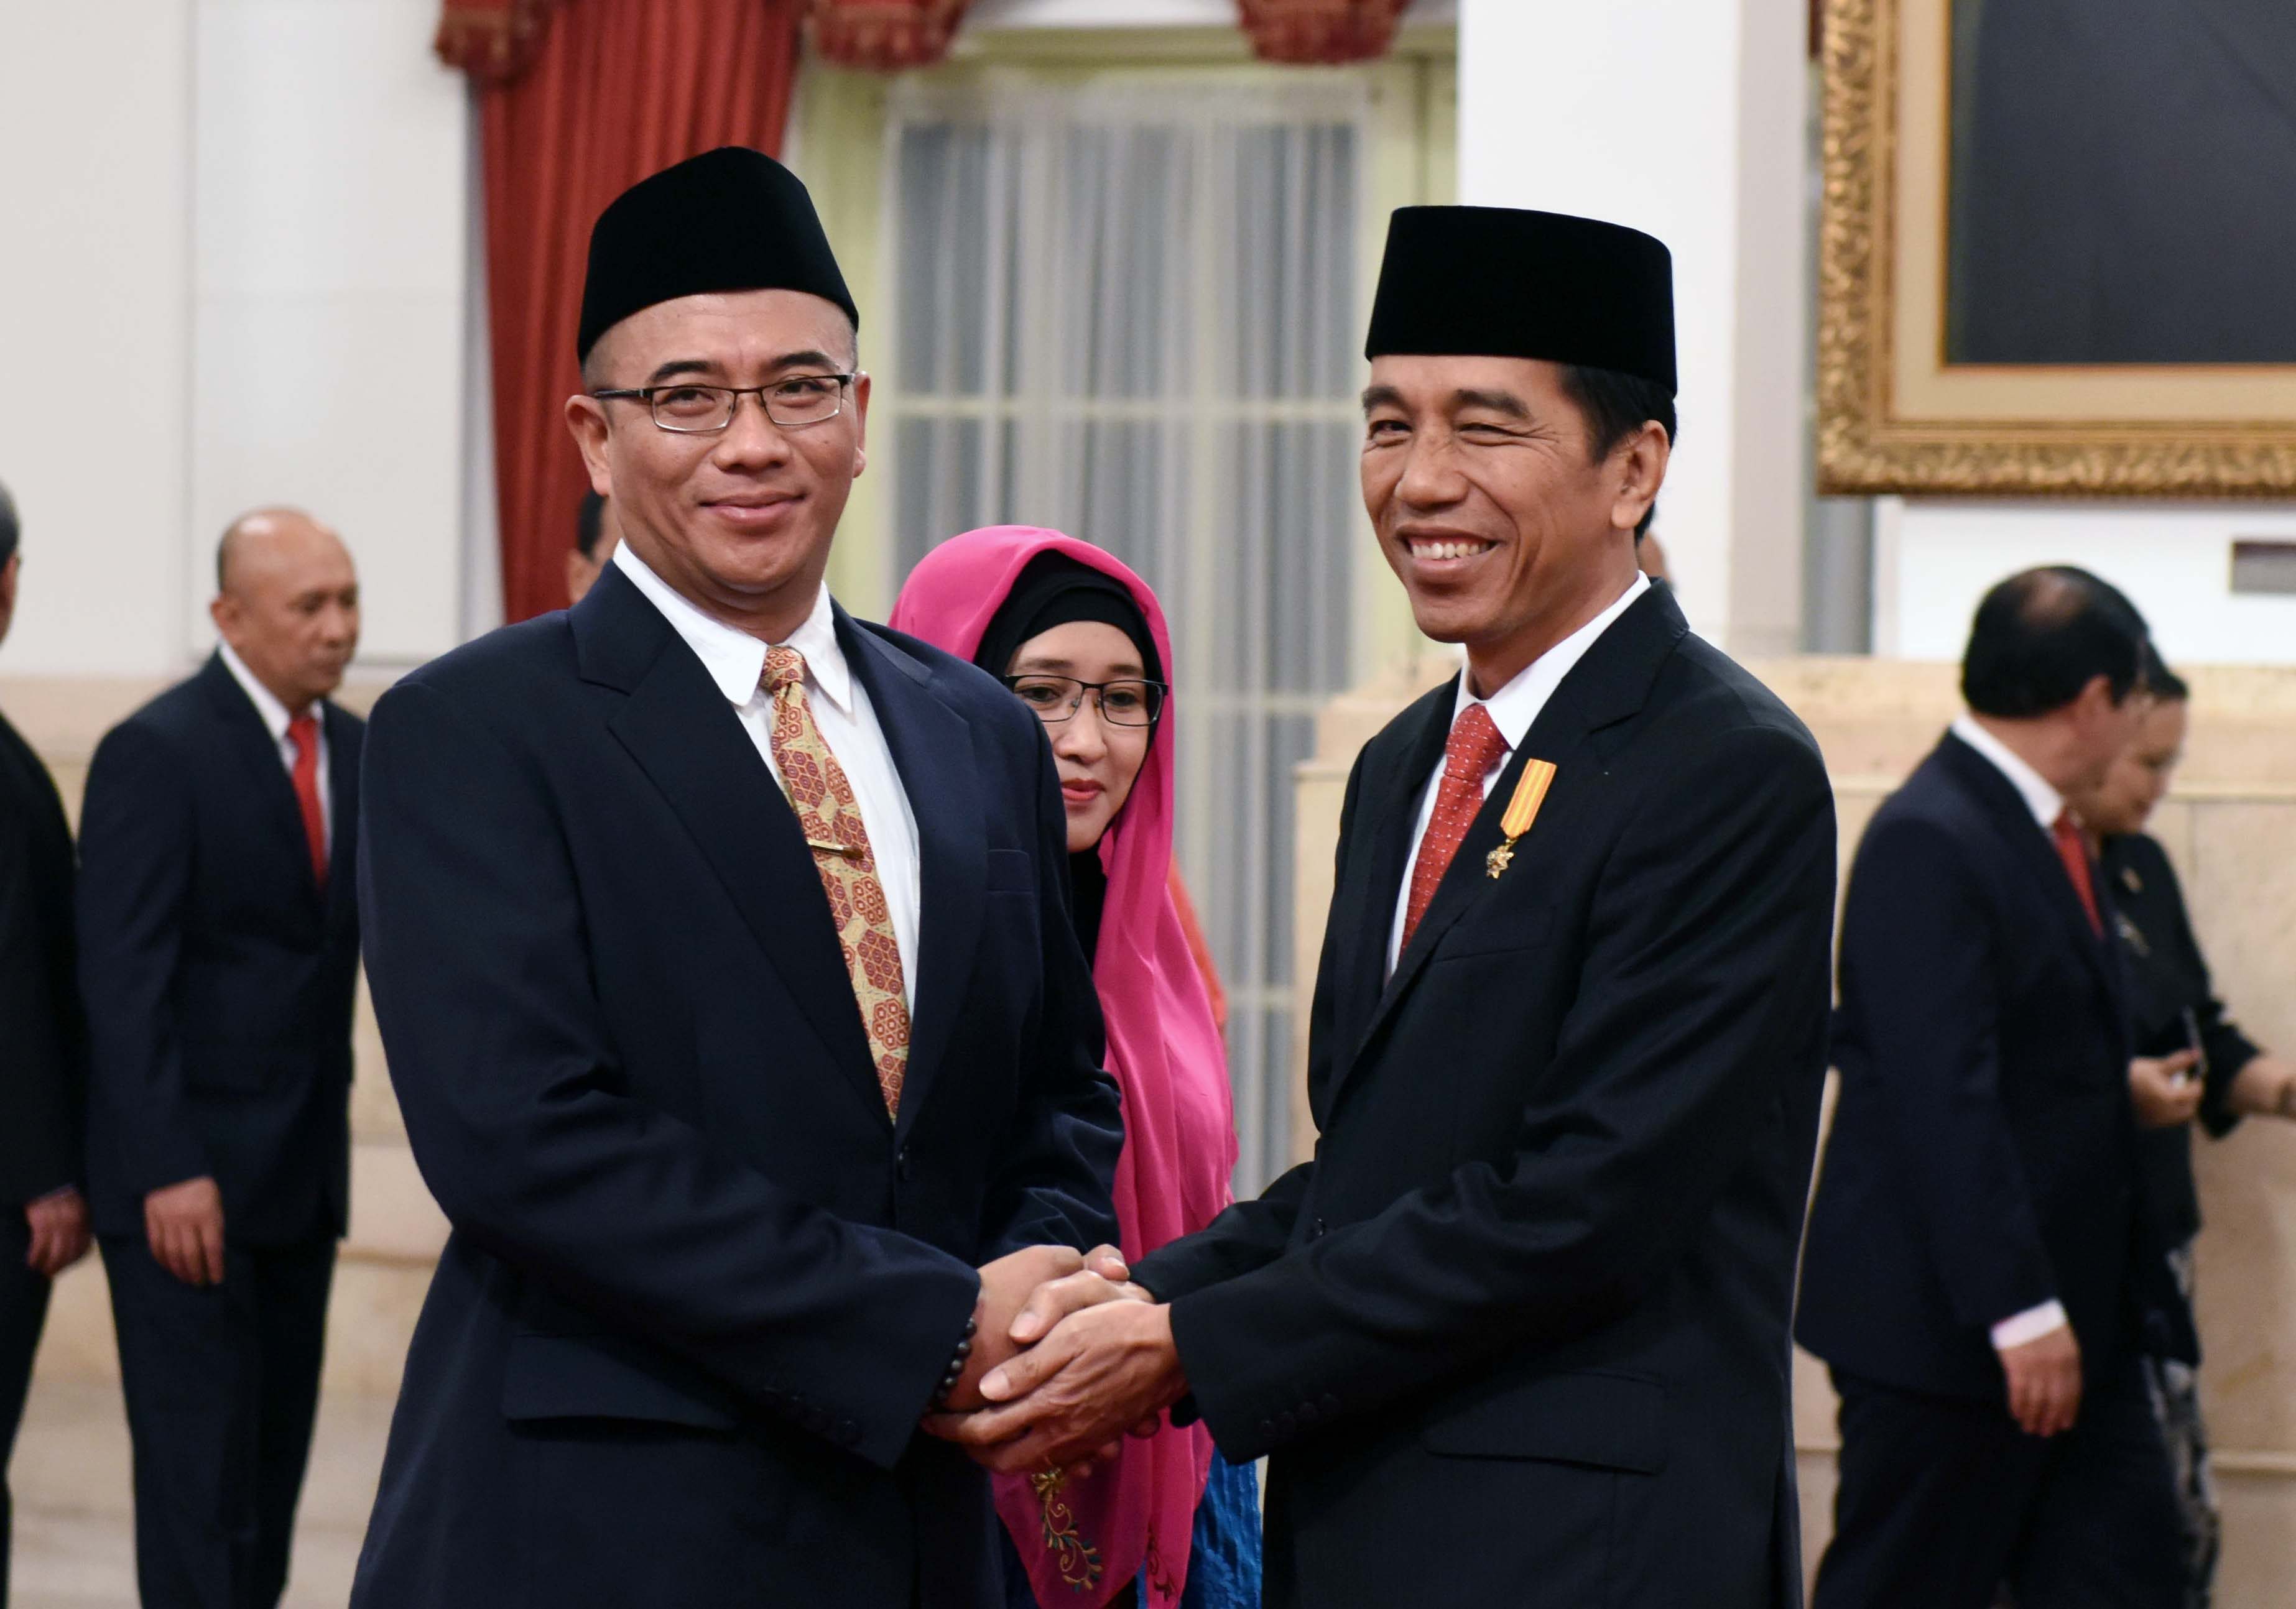 Presiden Jokowi memberikan ucapan selamat kepada Hasyim Asy’ari usai dilantik jadi anggota KPU, di Istana Negara, Jakarta, pada 29 Agustus 2016. Foto dari Setkab 